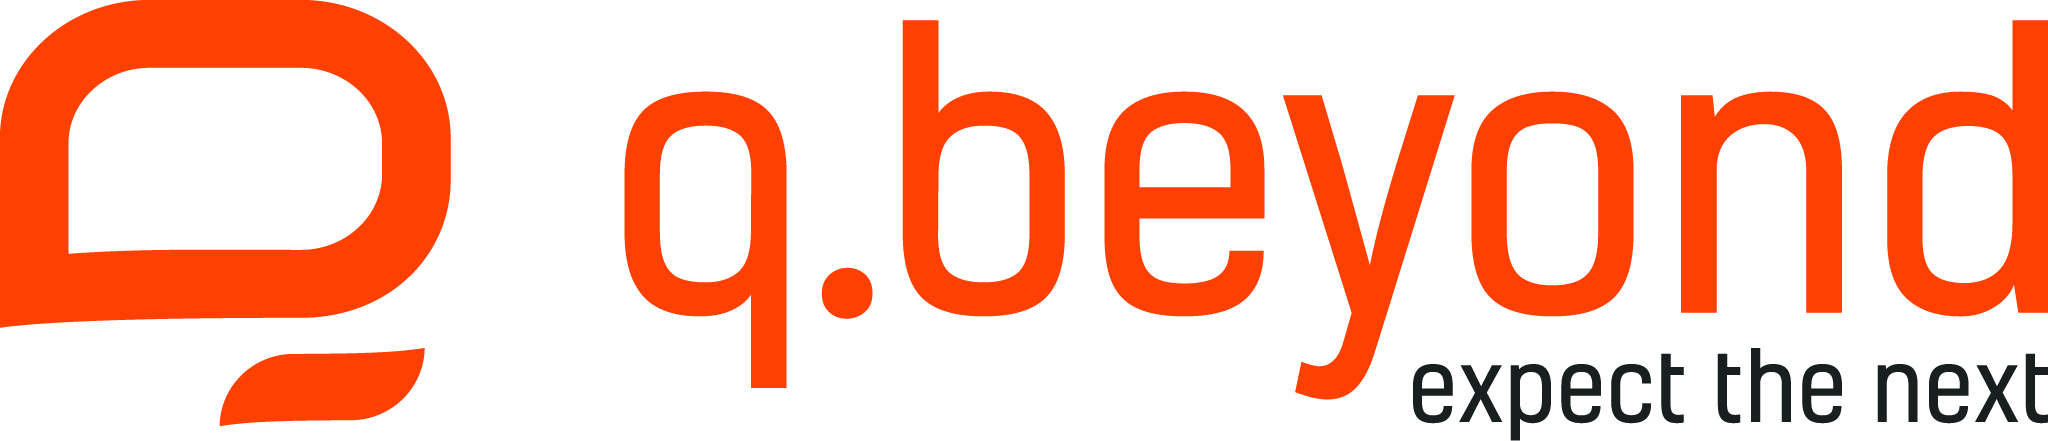 Provider logo for Qbeyond